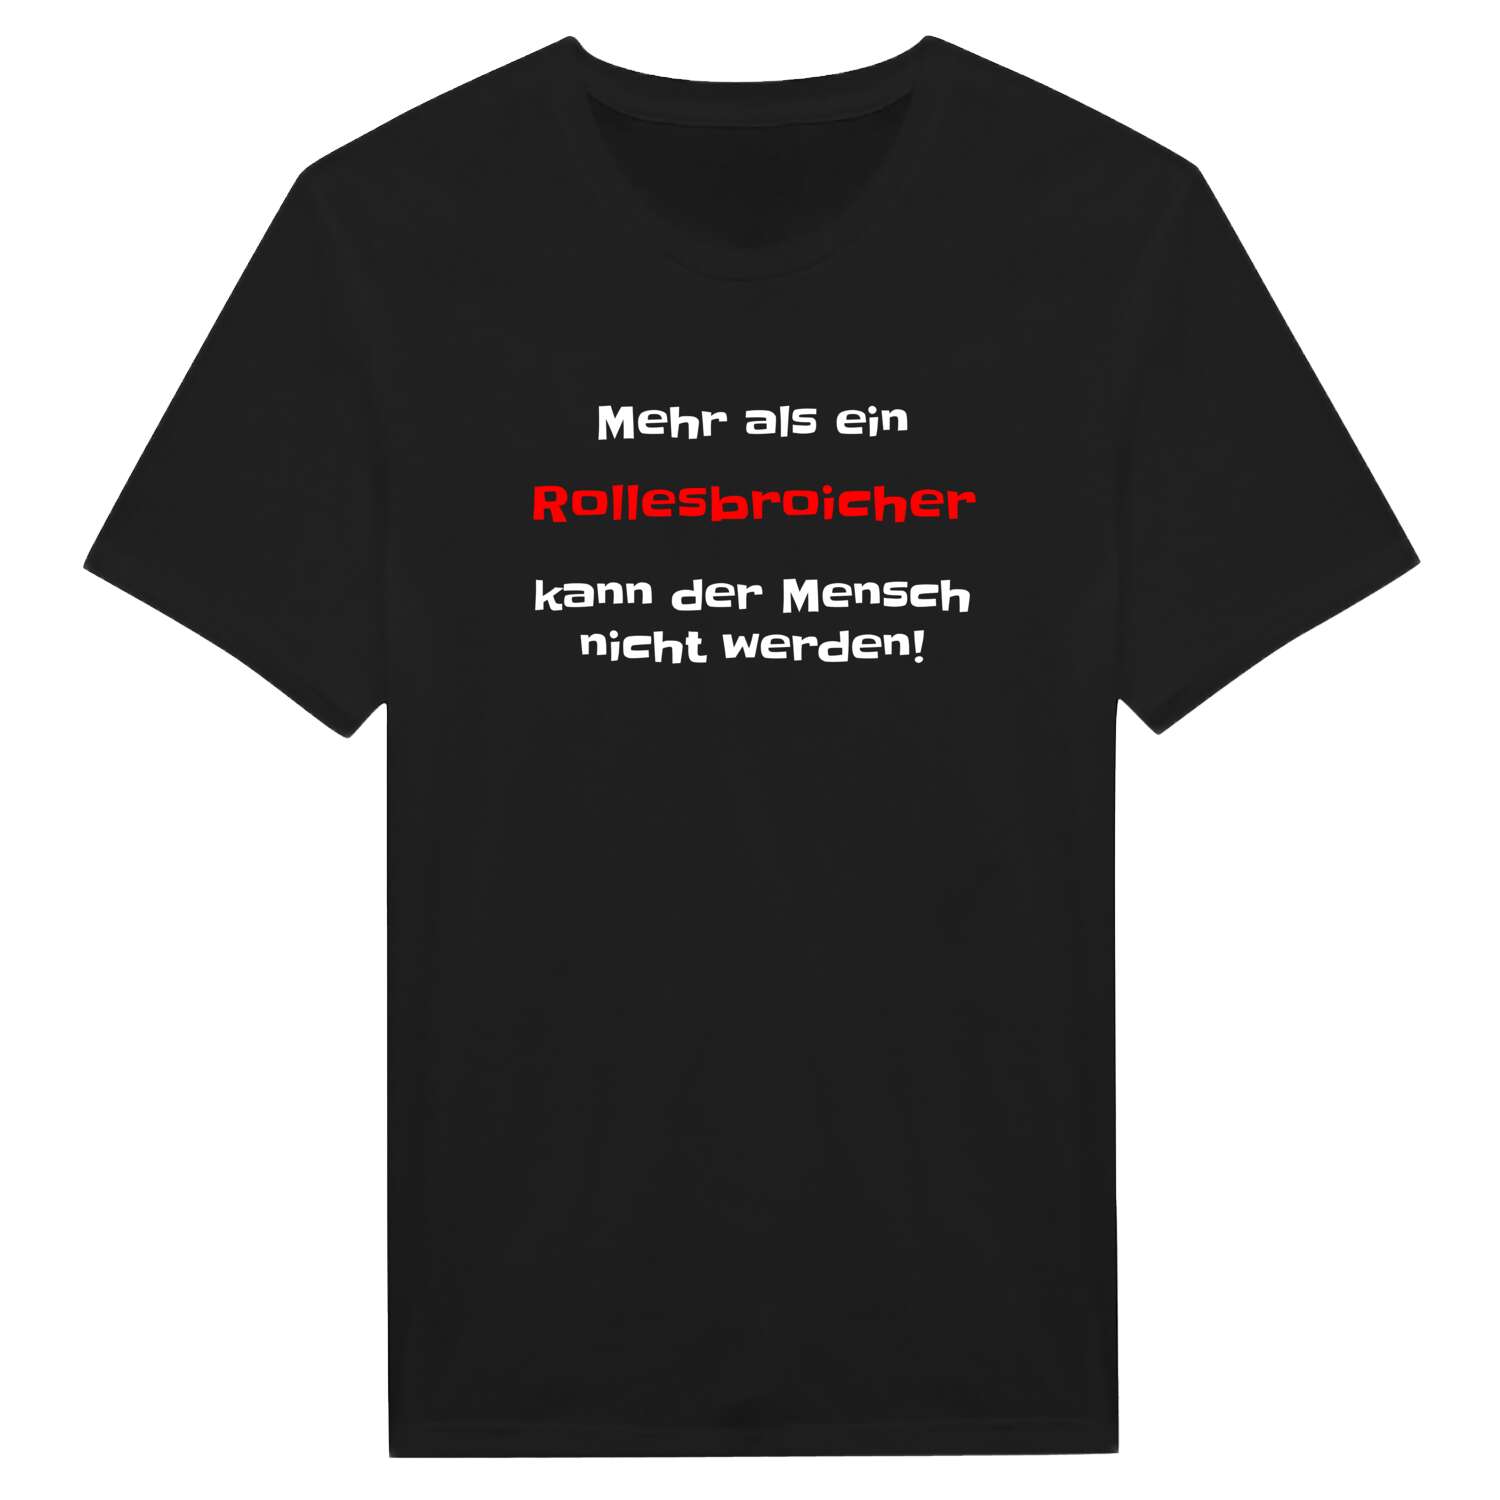 Rollesbroich T-Shirt »Mehr als ein«